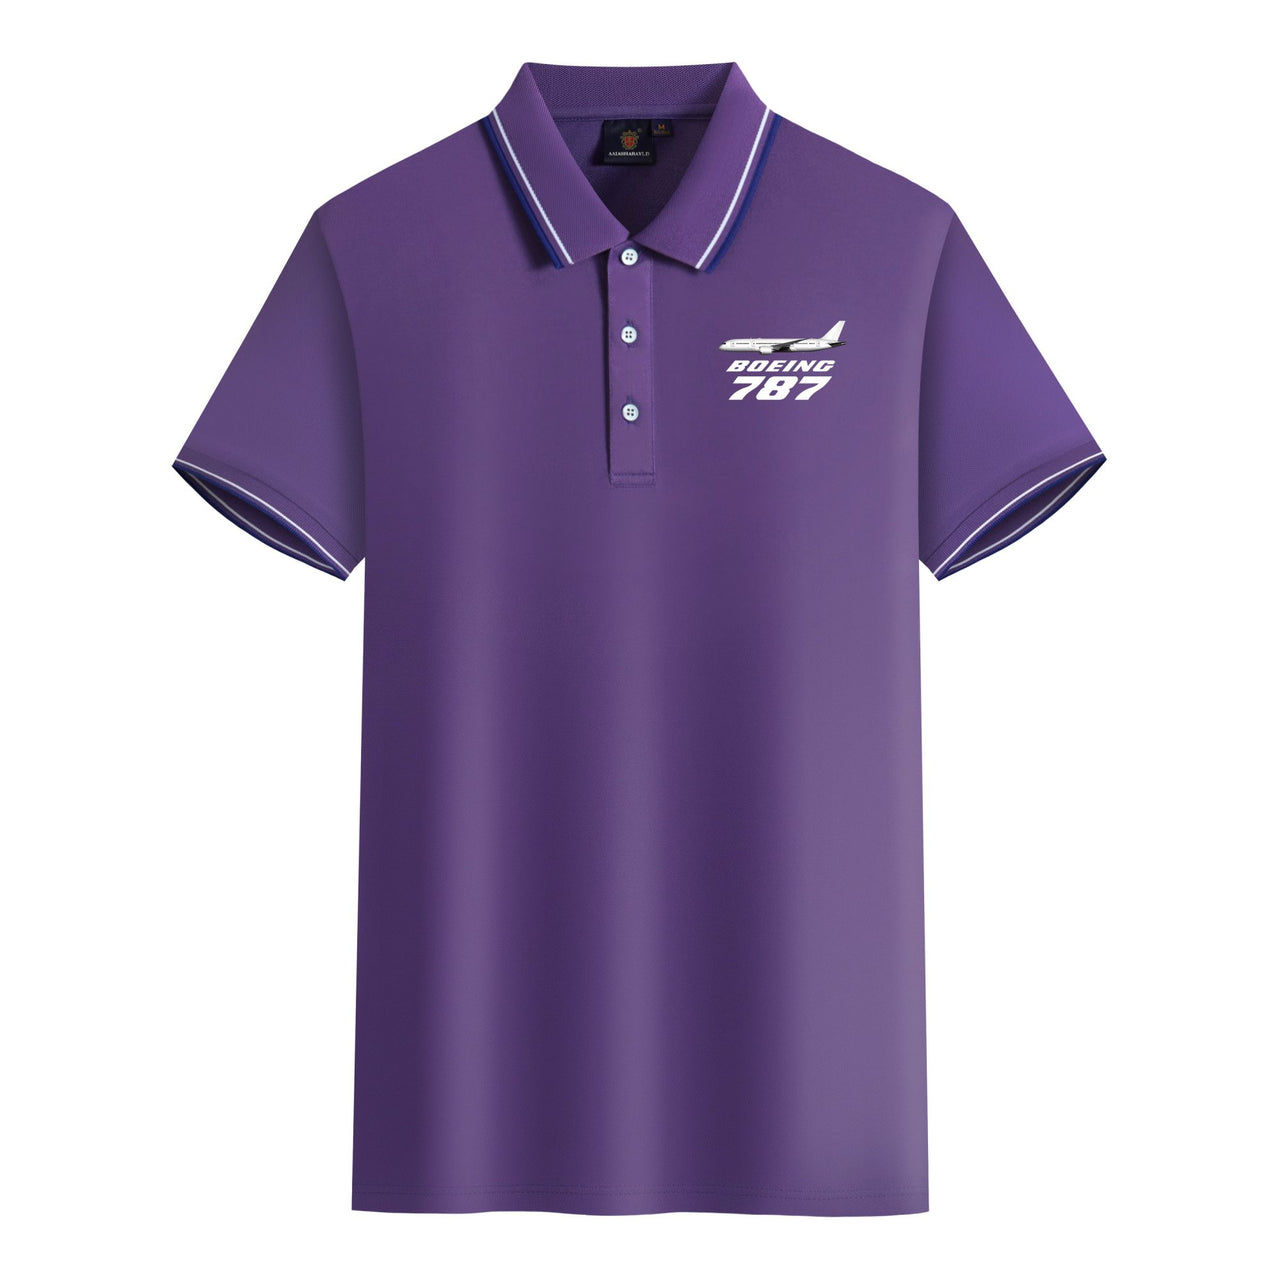 The Boeing 787 Designed Stylish Polo T-Shirts